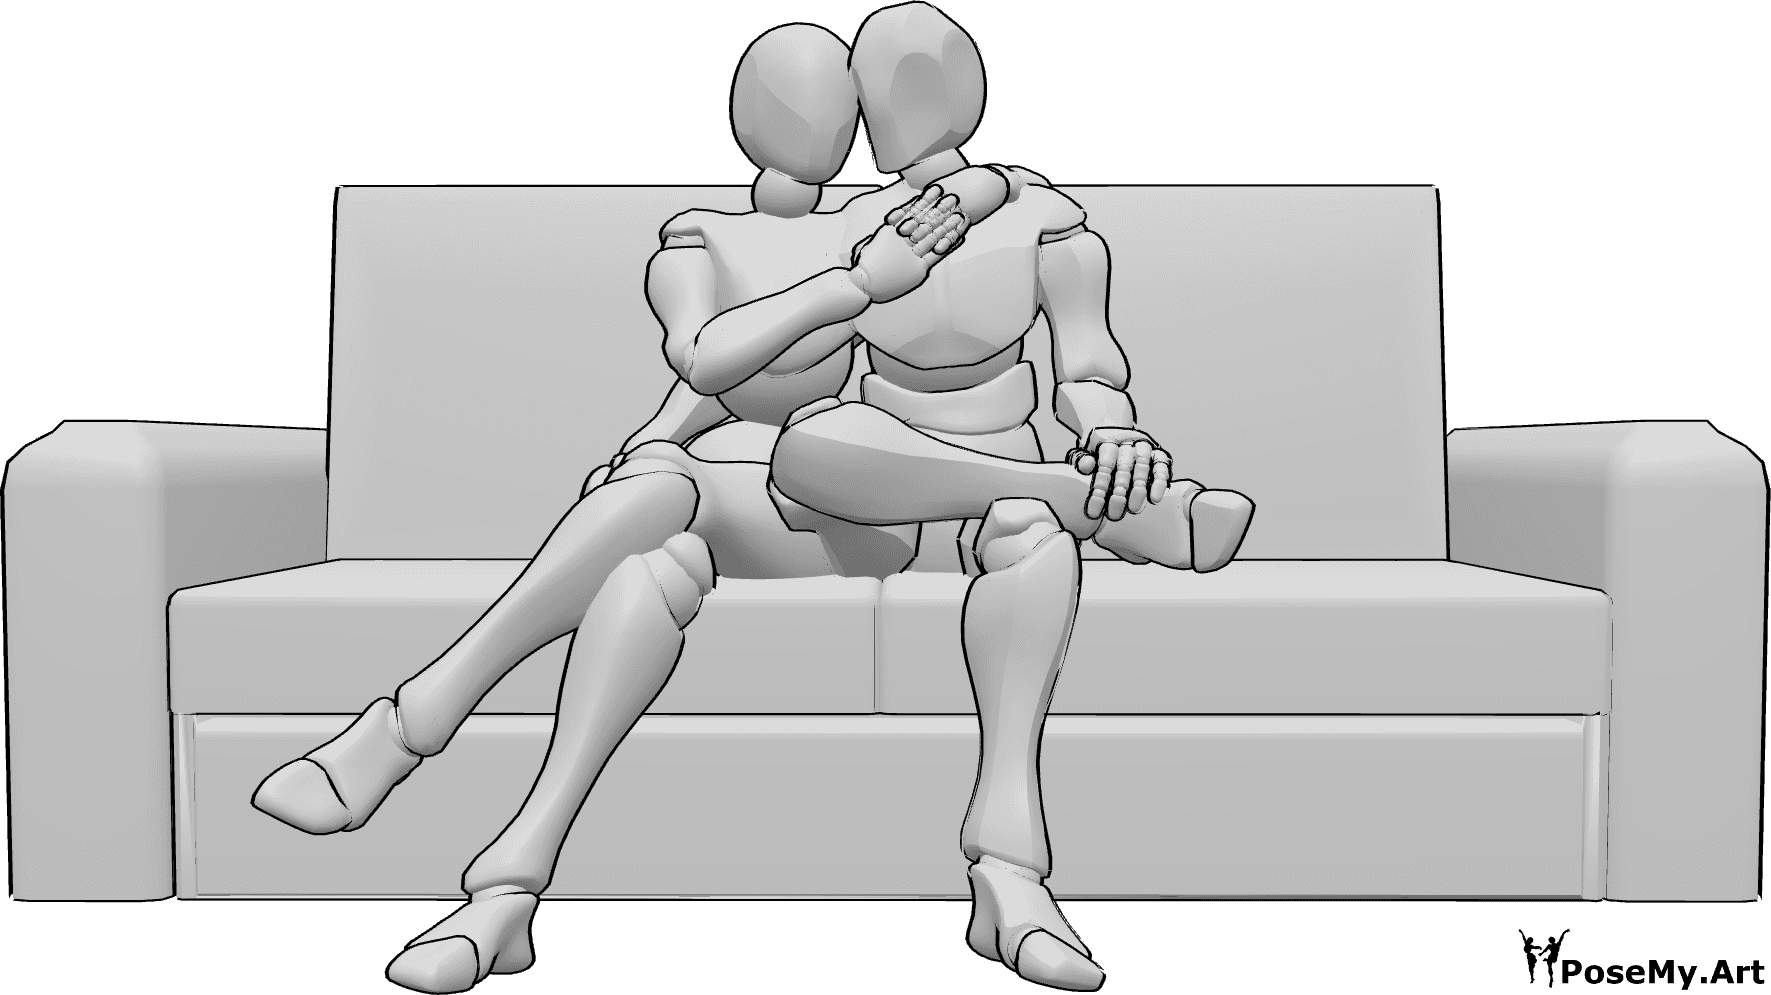 Référence des poses- Câlins assis sur le canapé - Une femme et un homme sont assis sur le canapé et se font des câlins.